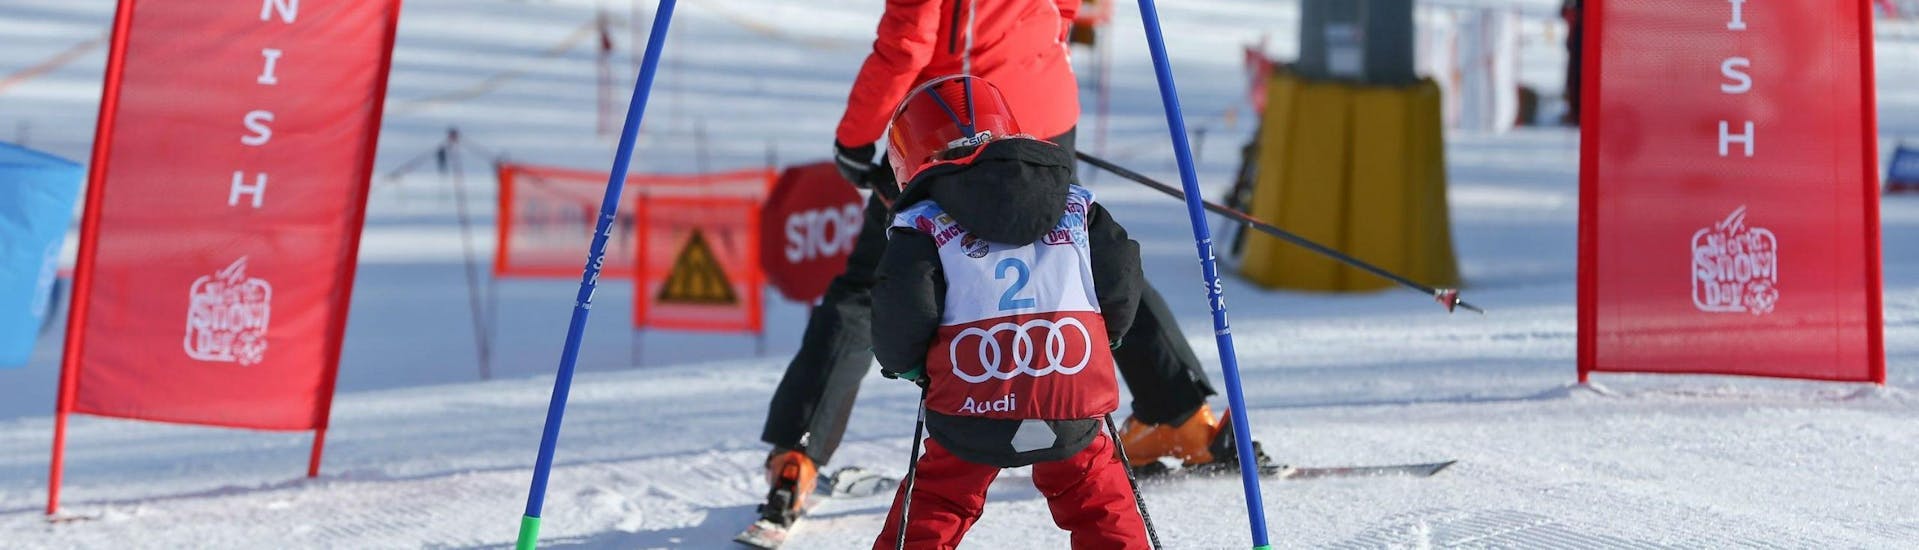 Ein kleines Kind übt im Skigebiet Cortina d'Ampezzo, im Rahmen des Angebots Kinder Skikurs "Smart" (4-12 Jahre) - Mit Vorkenntnissen der Skischule Scuola Sci Cortina, seine Skitechnik.